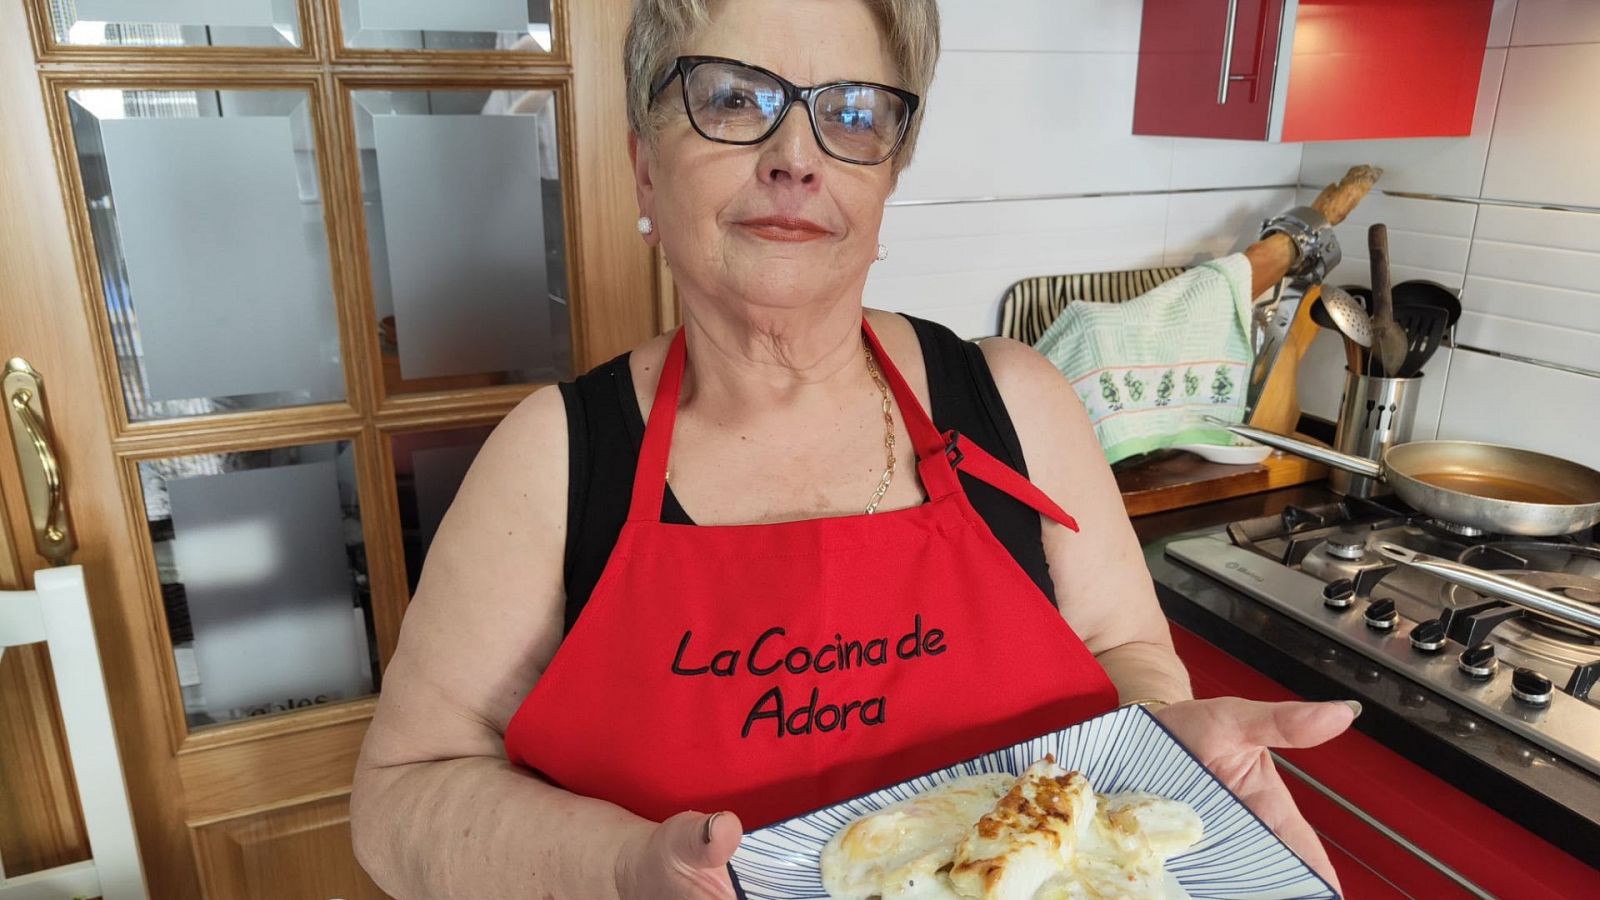 La cocina de Adora: receta para hacer un bacalao al horno acompañado de una cama de patatas y cebolla - Ver ahora